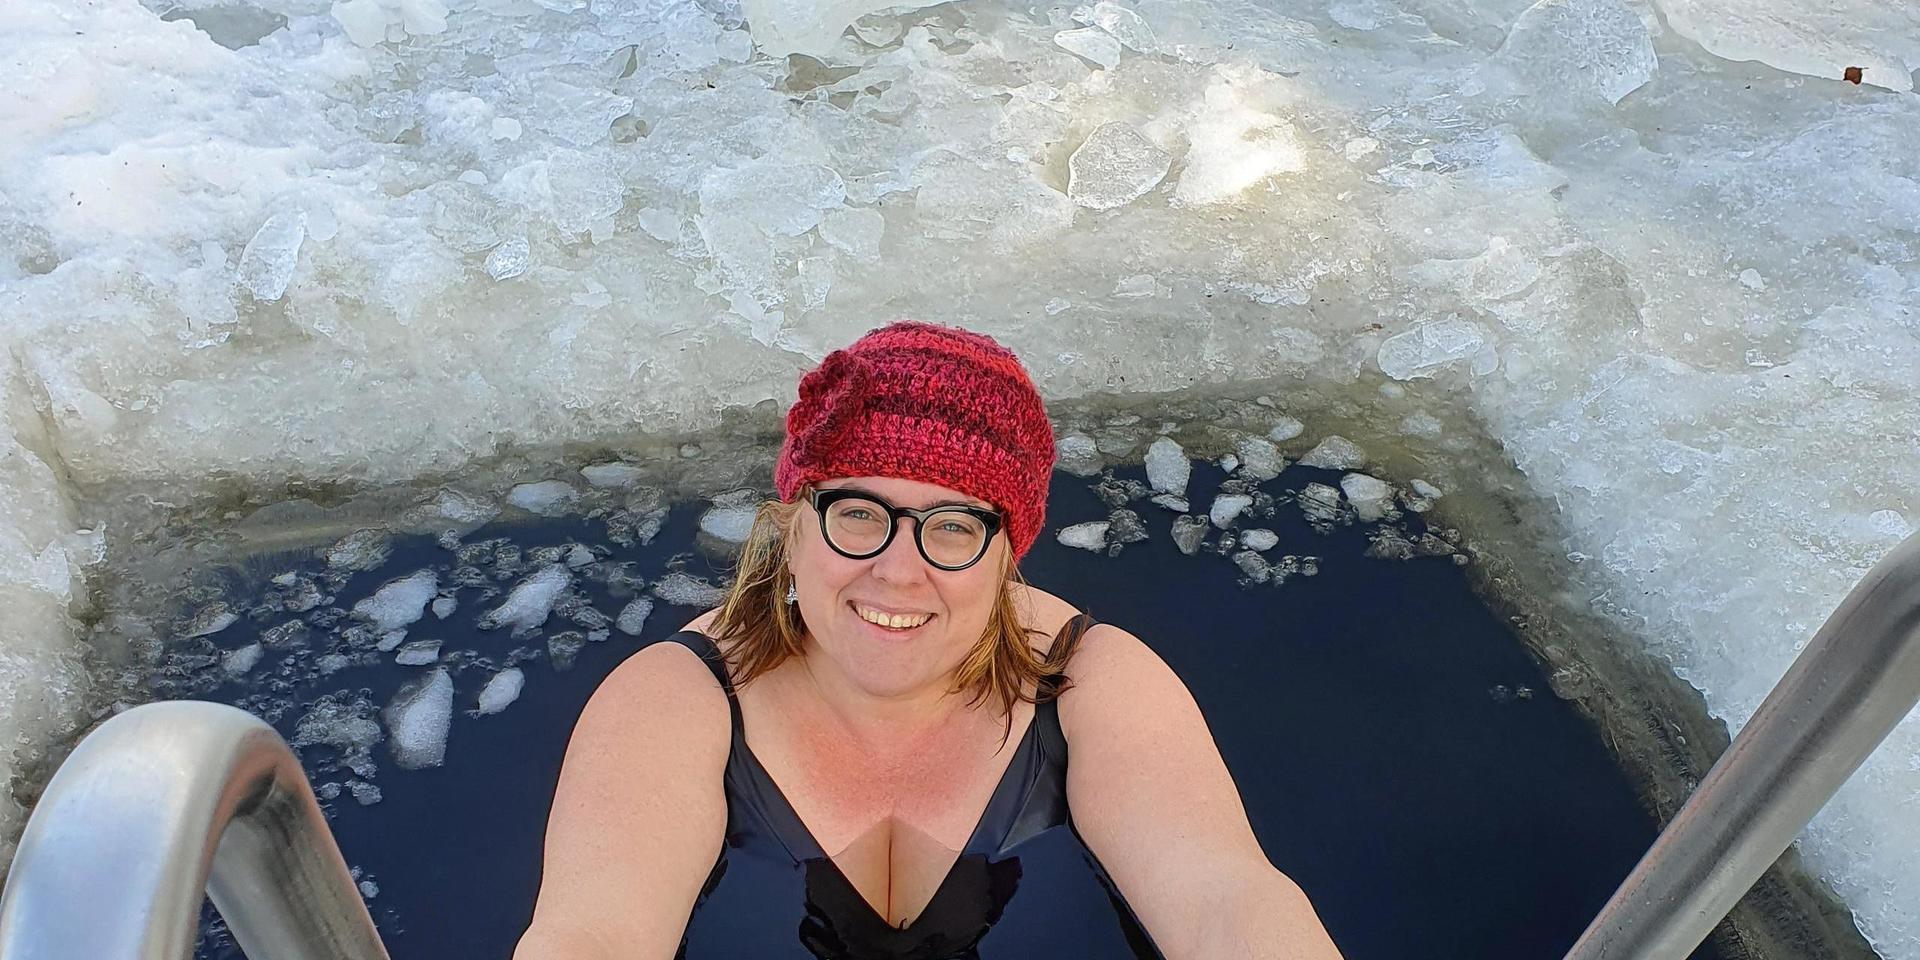 Oppositionsrådet Anna Roos har ägnat vintern åt kalla bad. 25 dopp i isvaken har det blivit sedan början av januari. Det längsta doppet var fyra minuter långt.